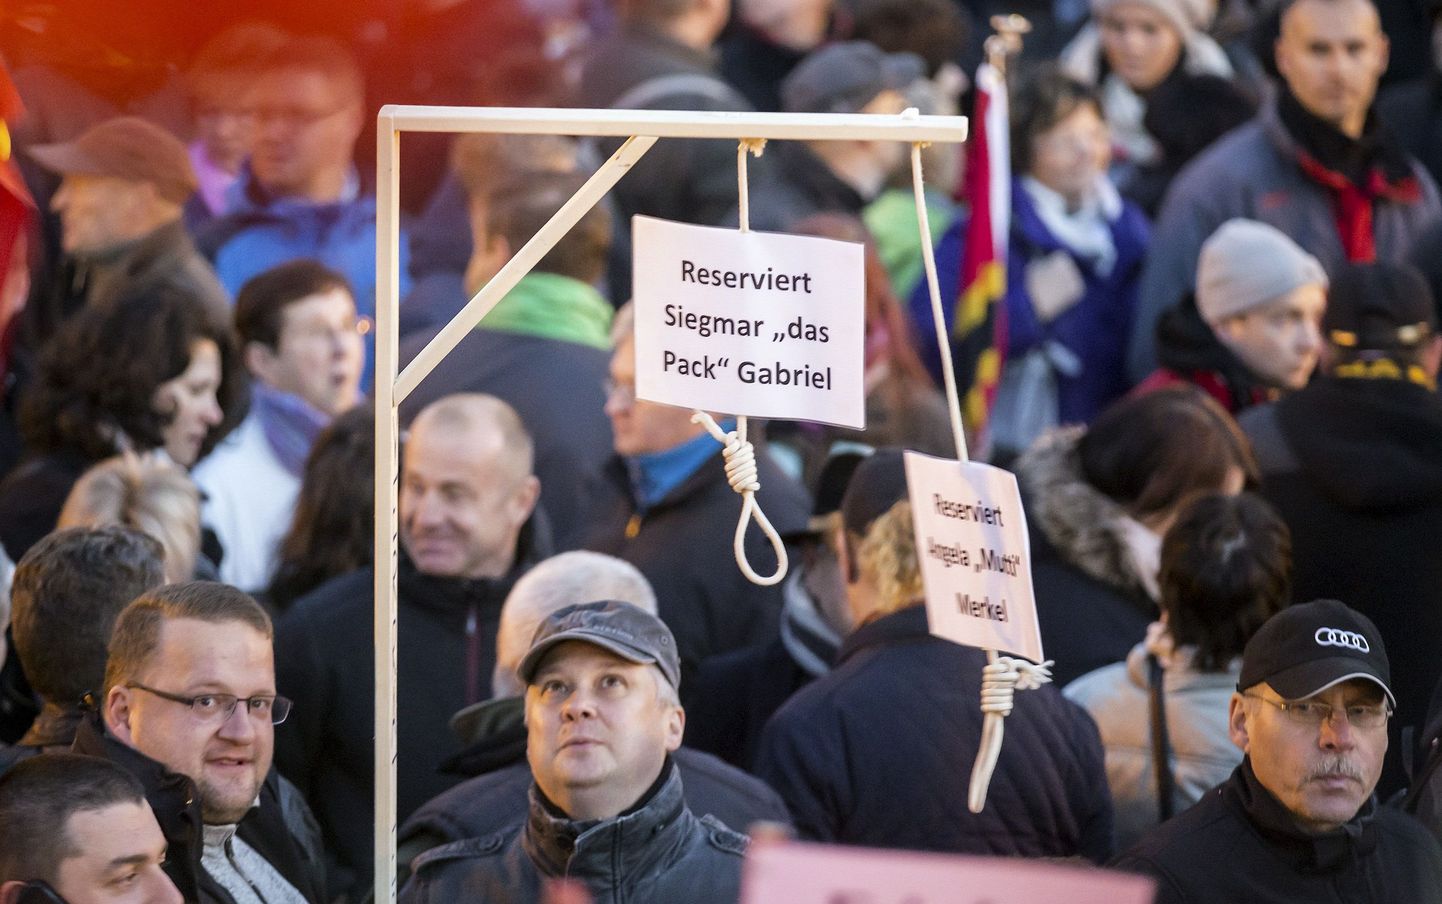 Протестующие принесли на митинг миниатюрные виселицы для Ангелы Меркель и вице-канцлера Зигмара Габриэля.